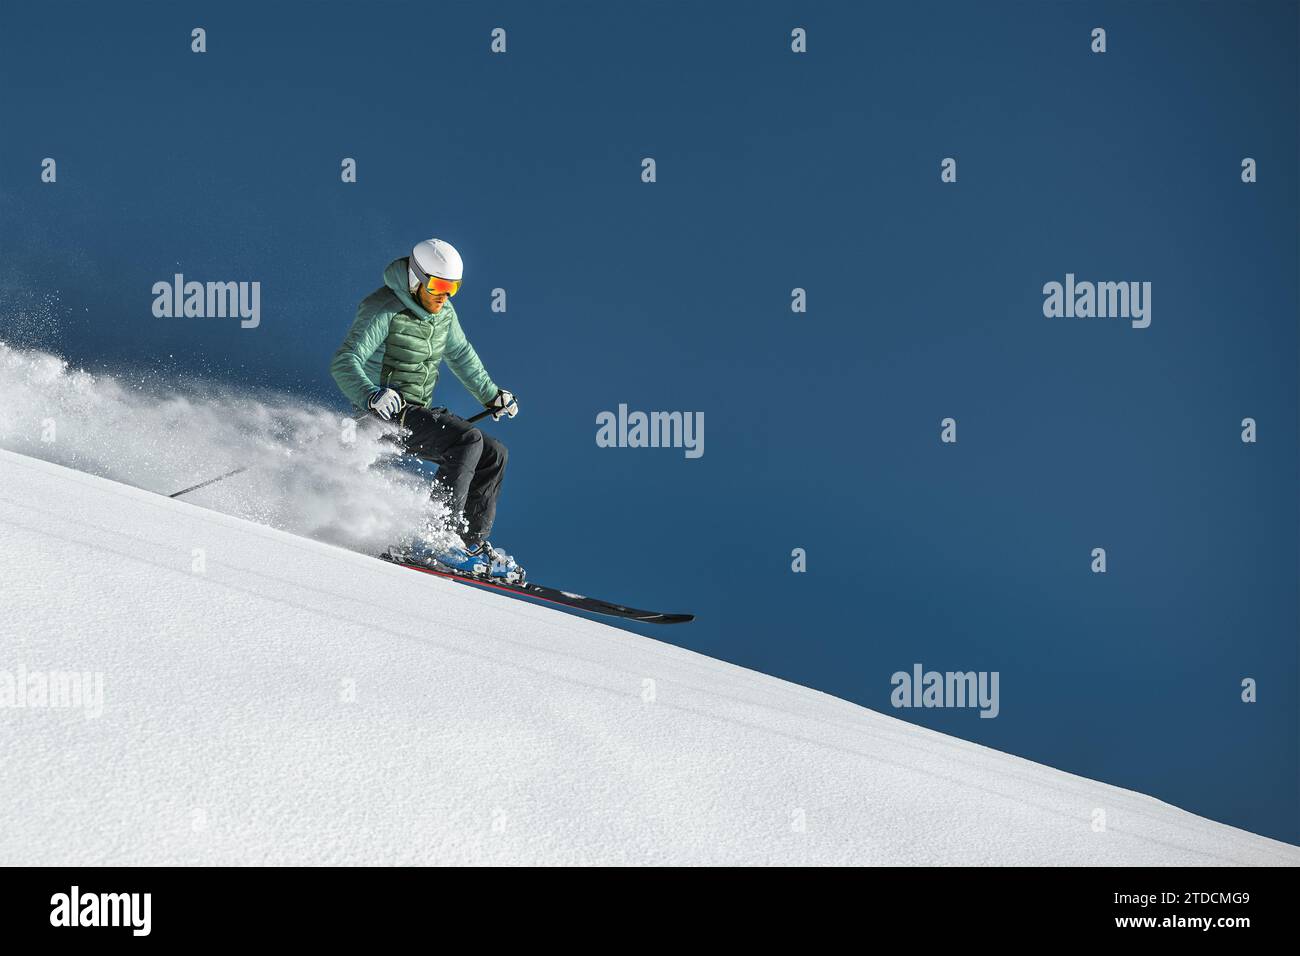 Homme sportif skiant dans la neige fraîche Banque D'Images